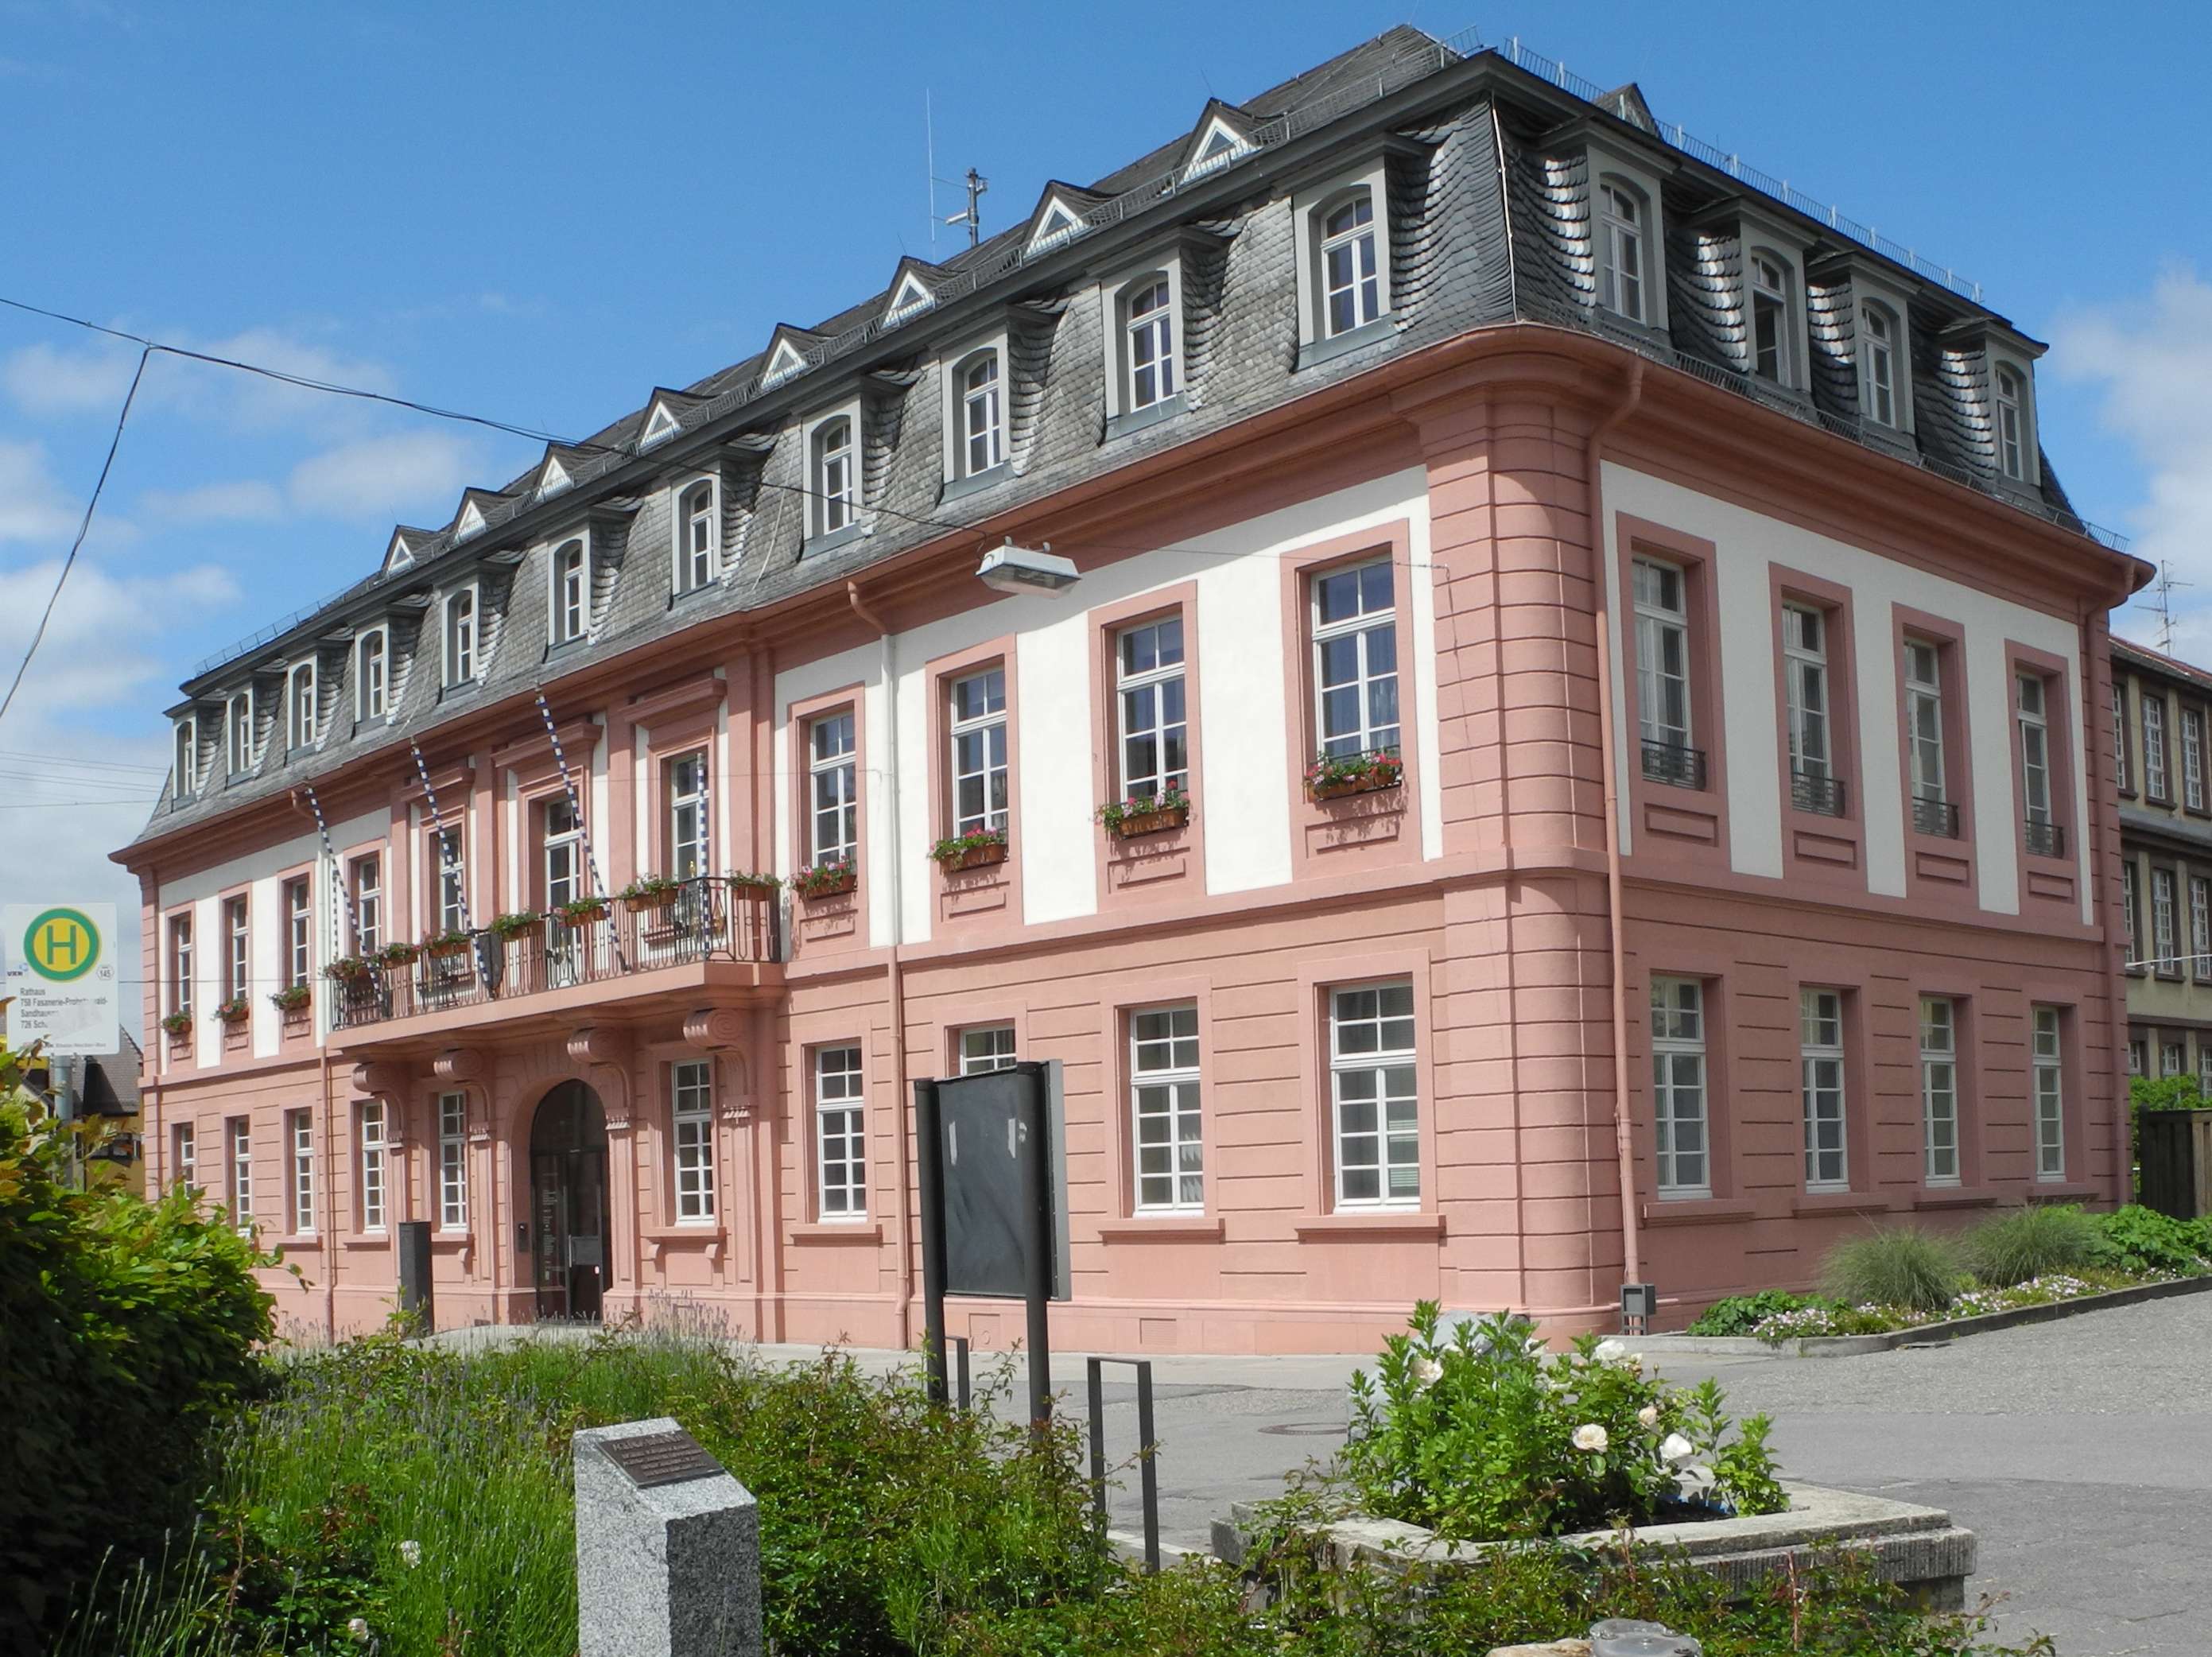  Historisches Rathaus Leimen 